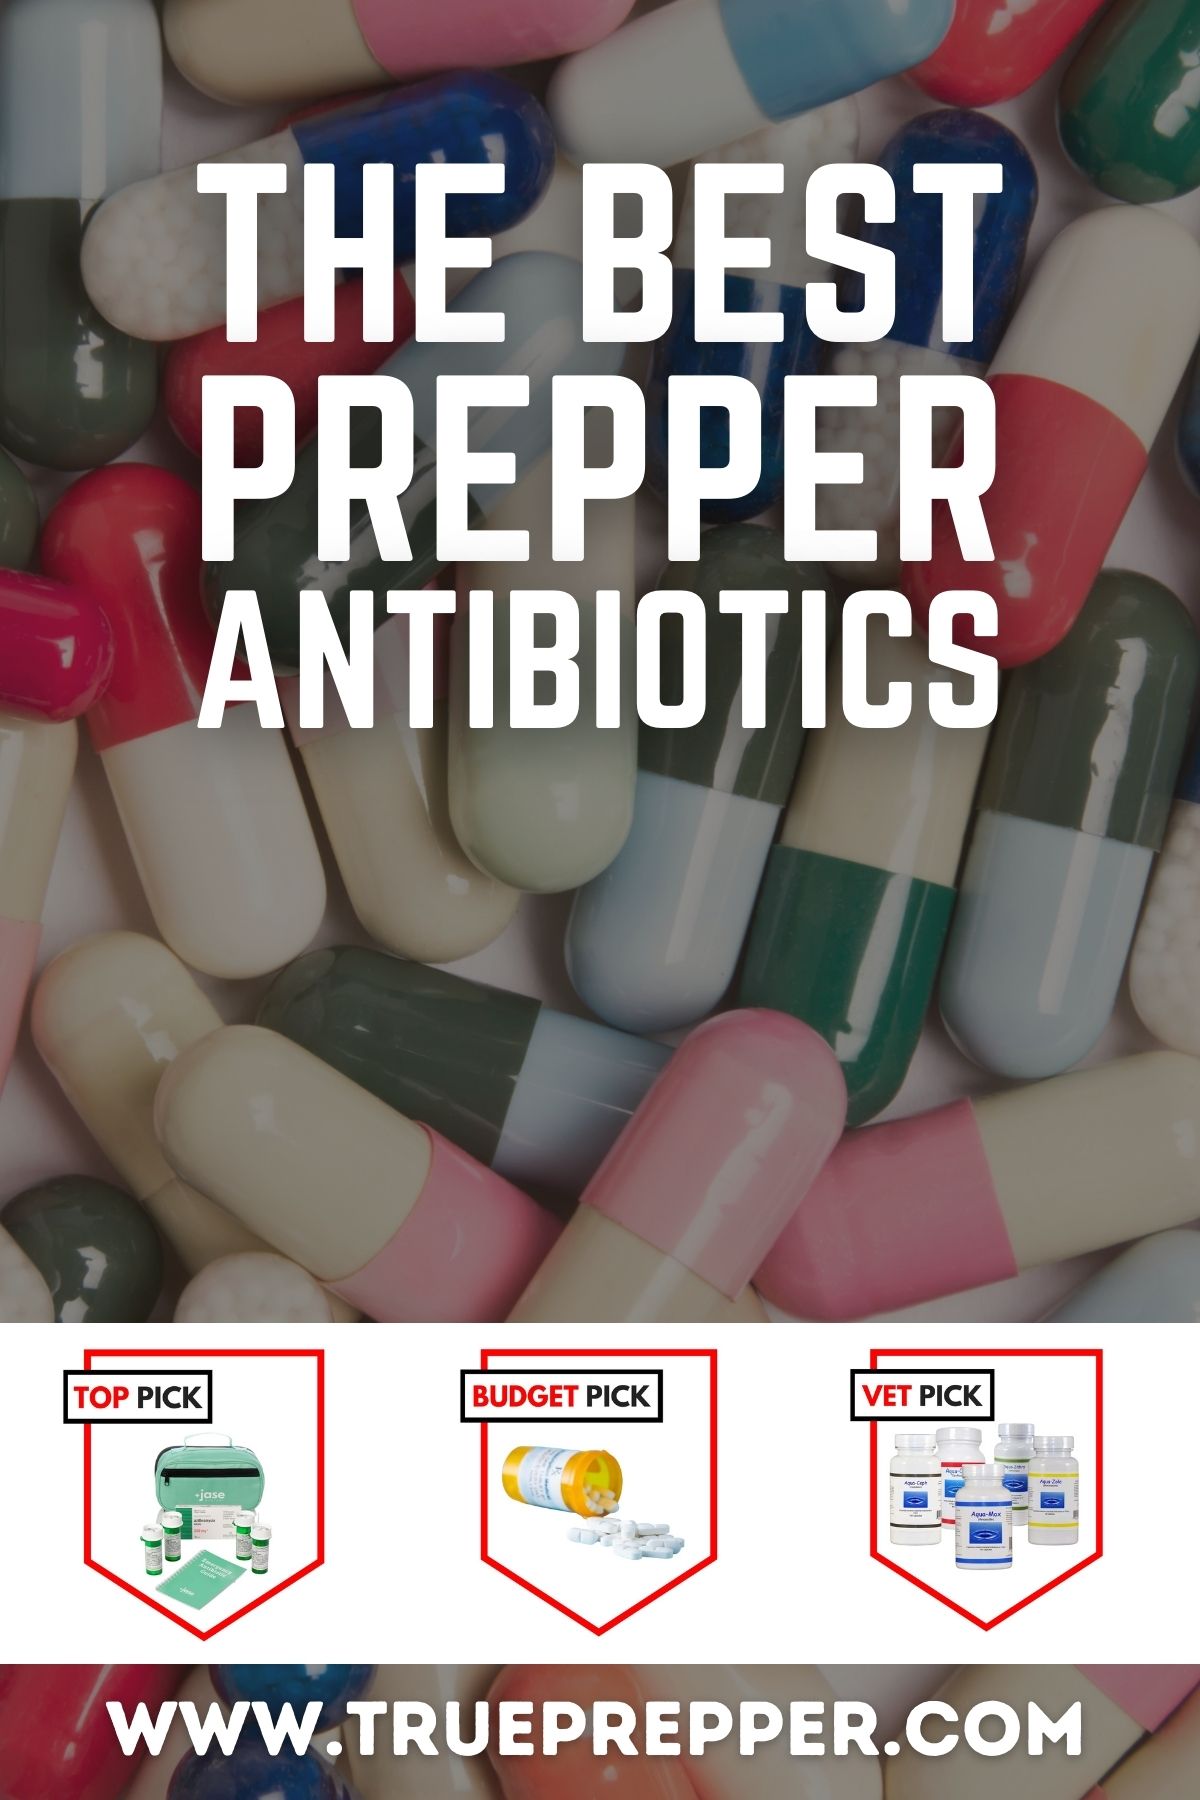 The Best Prepper Antibiotics